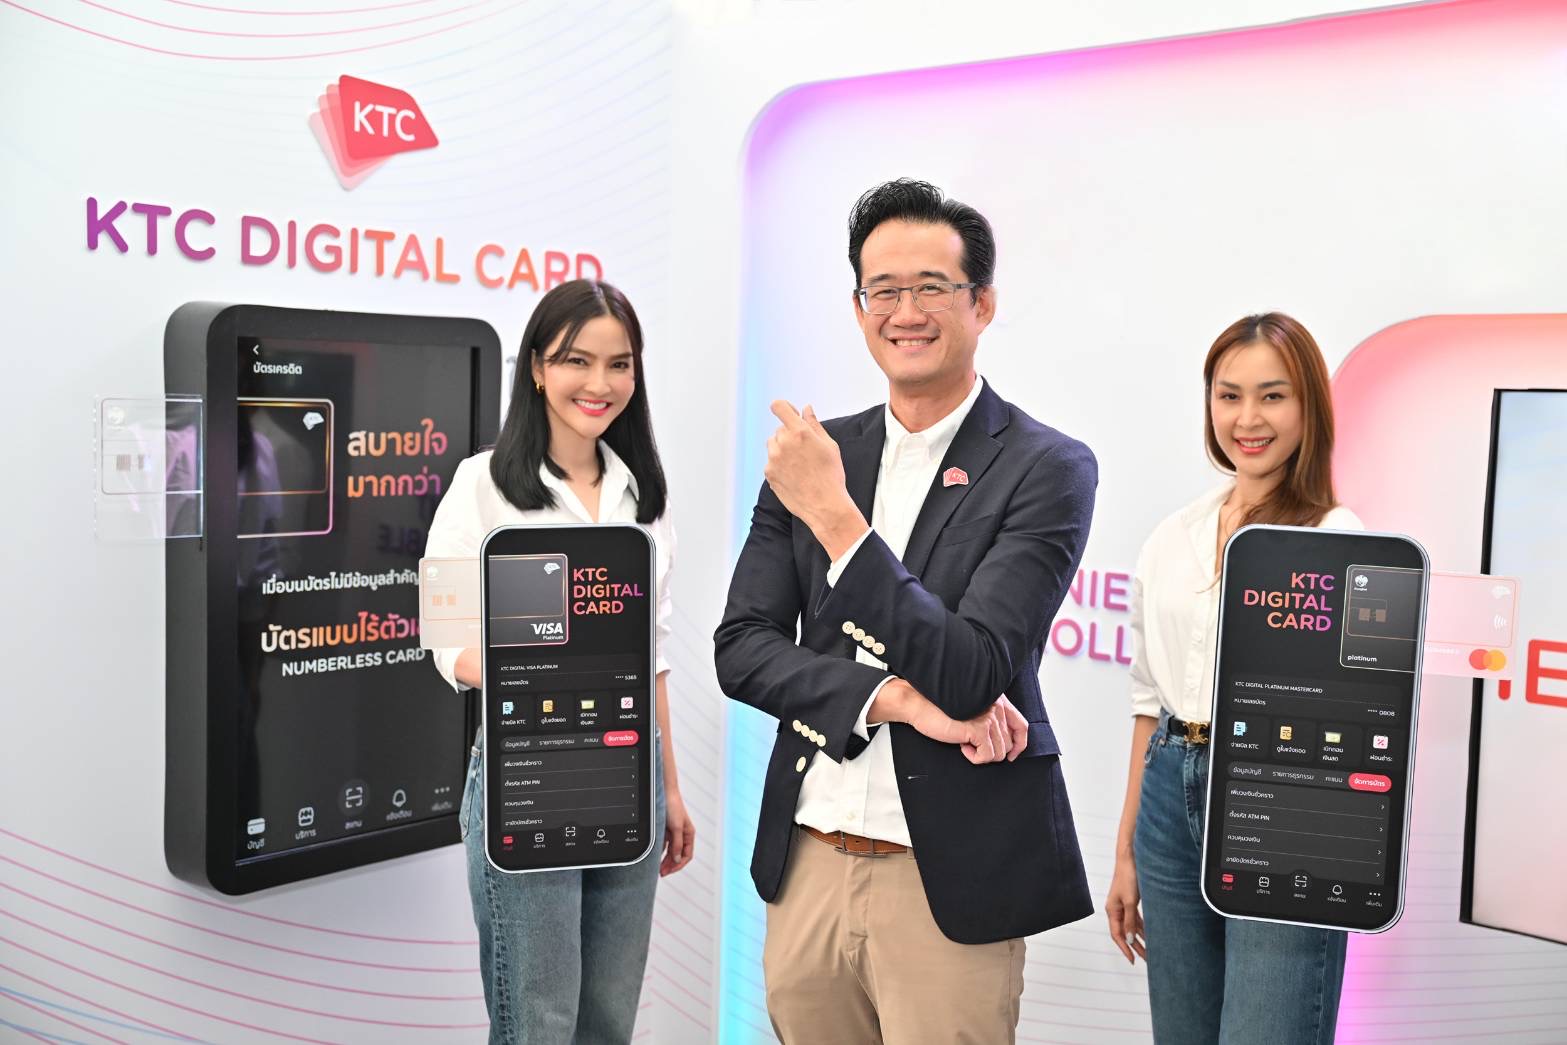 เคทีซีเผยบัตร “KTC DIGITAL CREDIT CARD” บัตรเครดิตสุดปลอดภัยครั้งแรกในไทย ปักหมุดนวัตกรรมล้ำ ในงาน BOT Digital Finance Conference 14-15 กันยายนนี้